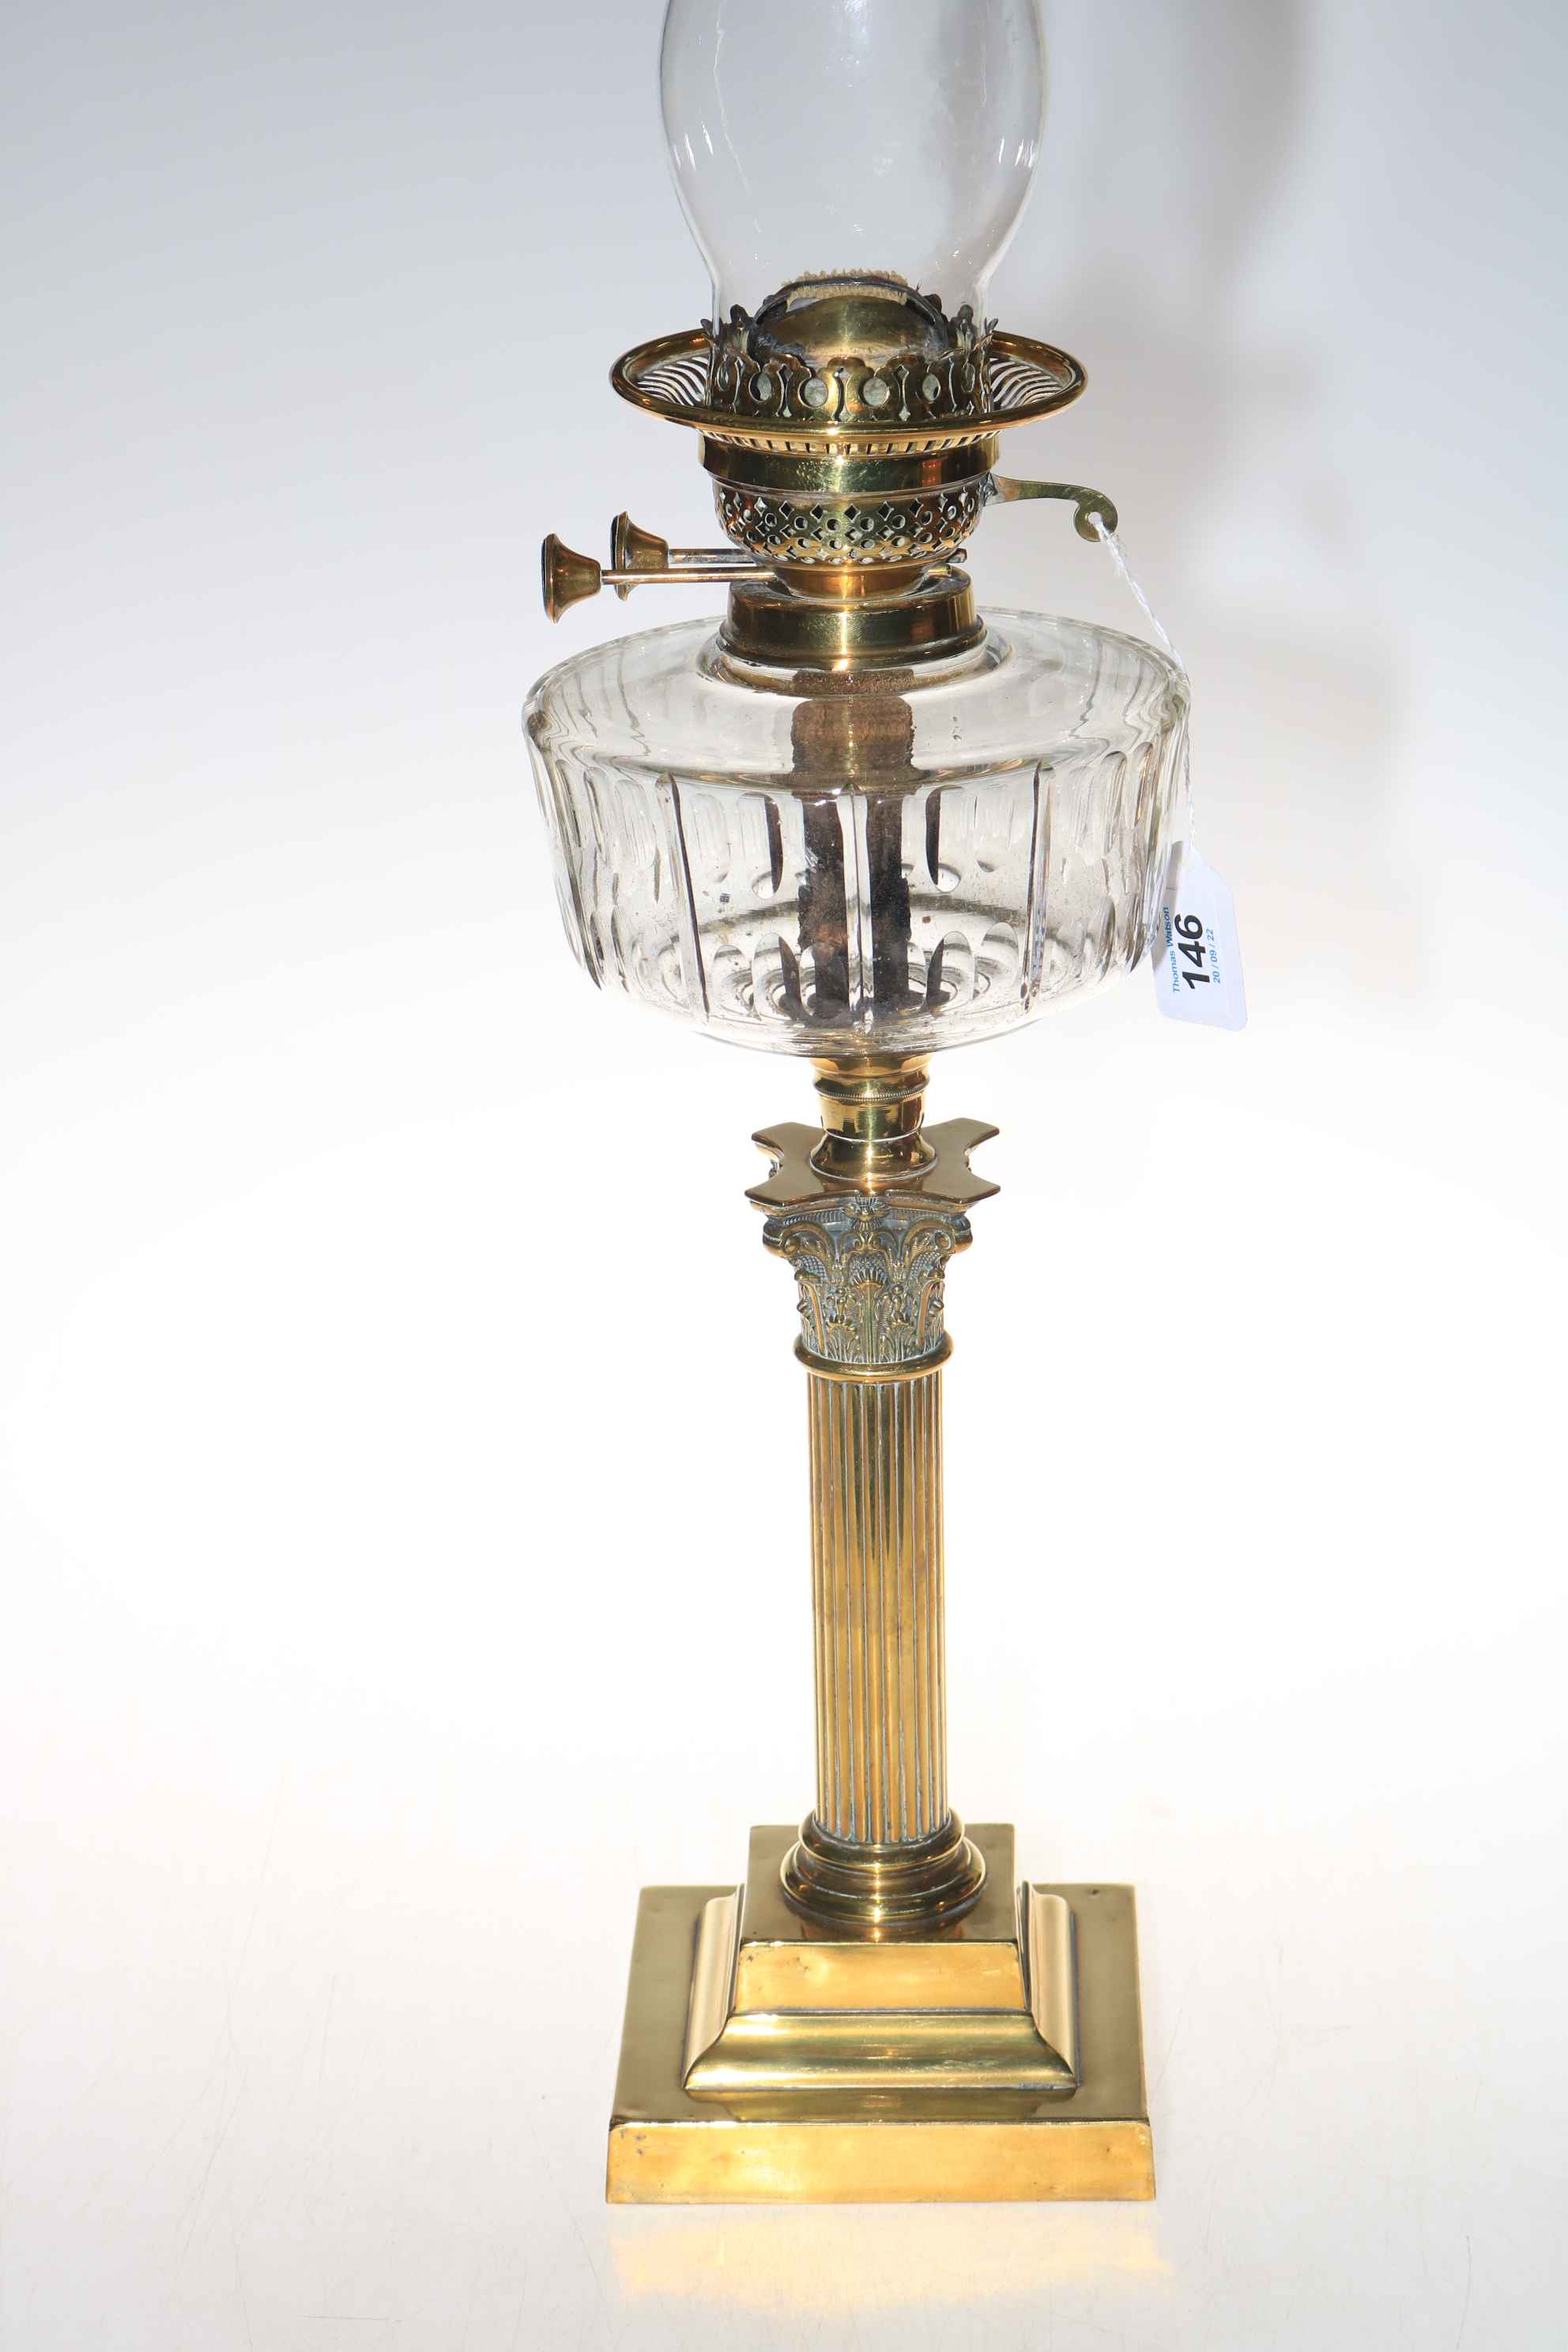 Brass Corinthian column oil lamp with clear glass reservoir, 71cm.